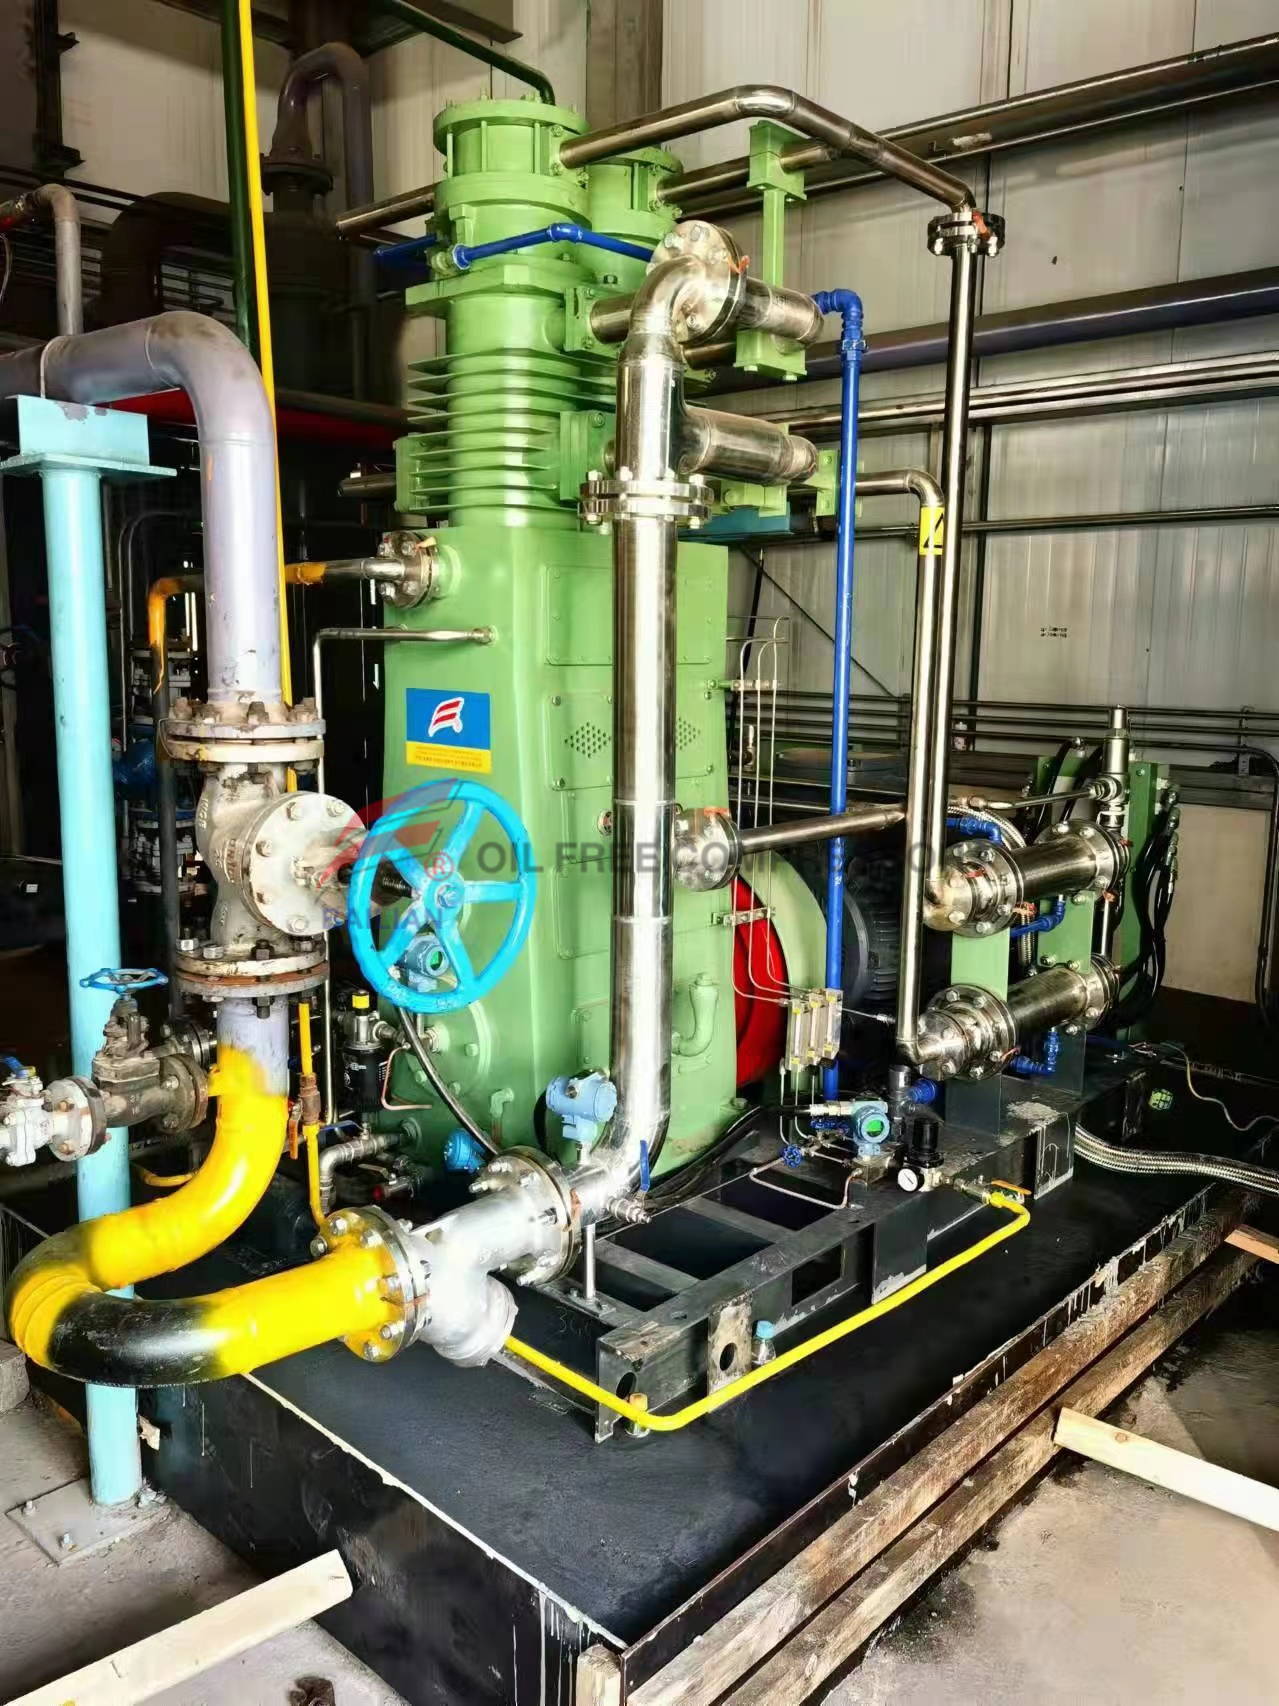 Compressor de oxigênio livre de óleo de 300nm3